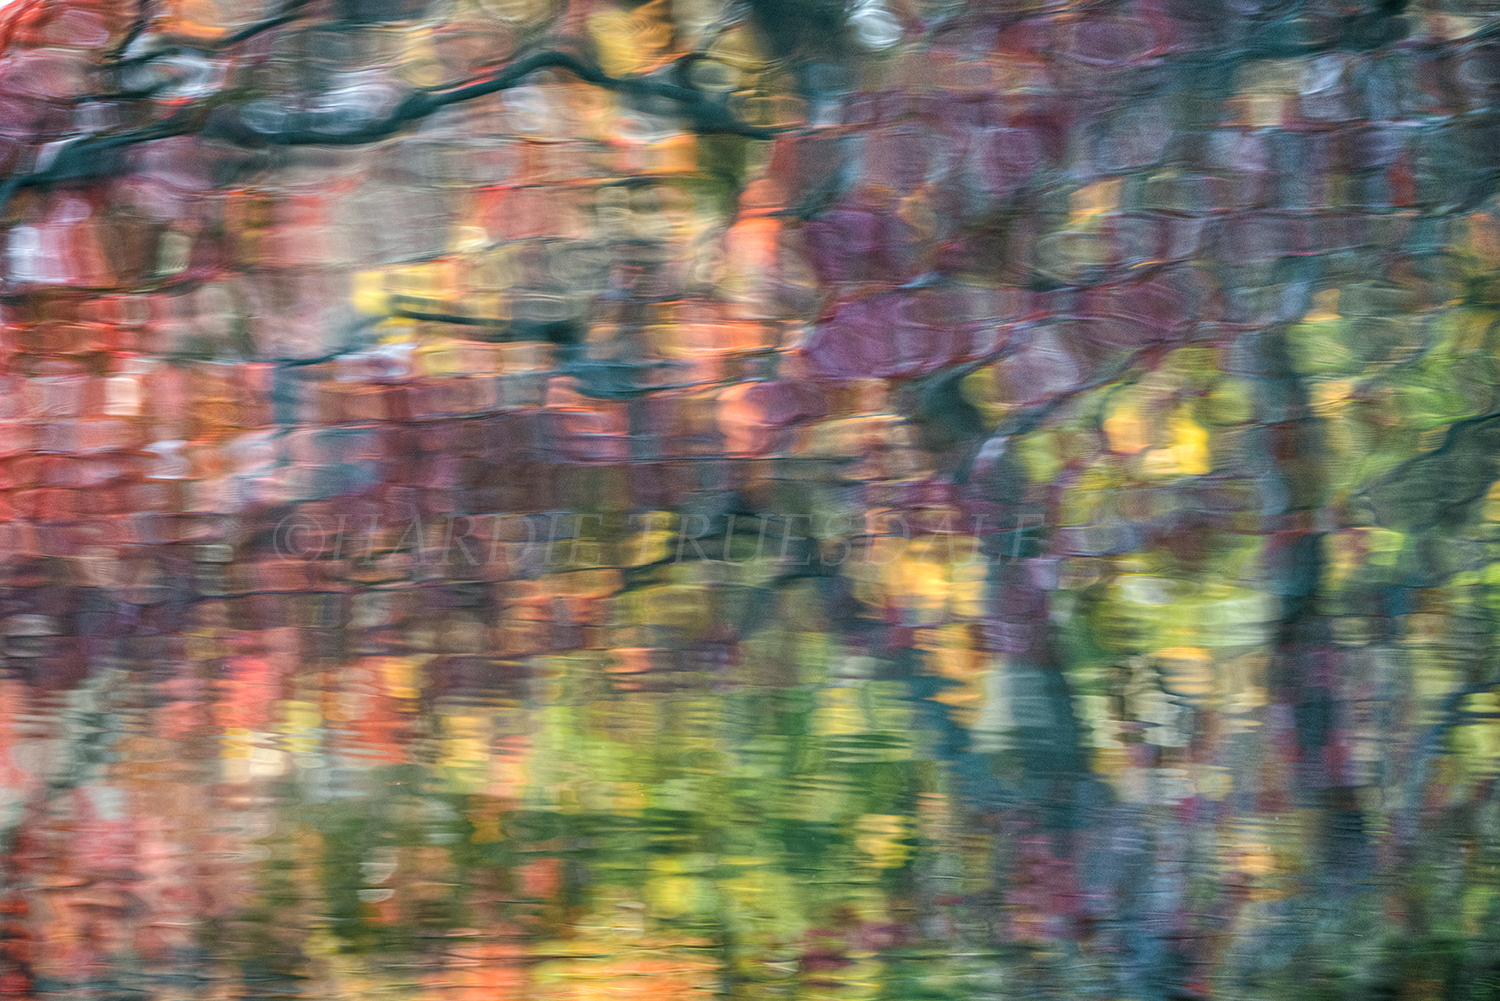 CC#149 "Monet Fall",Stony Brook, Cape Cod